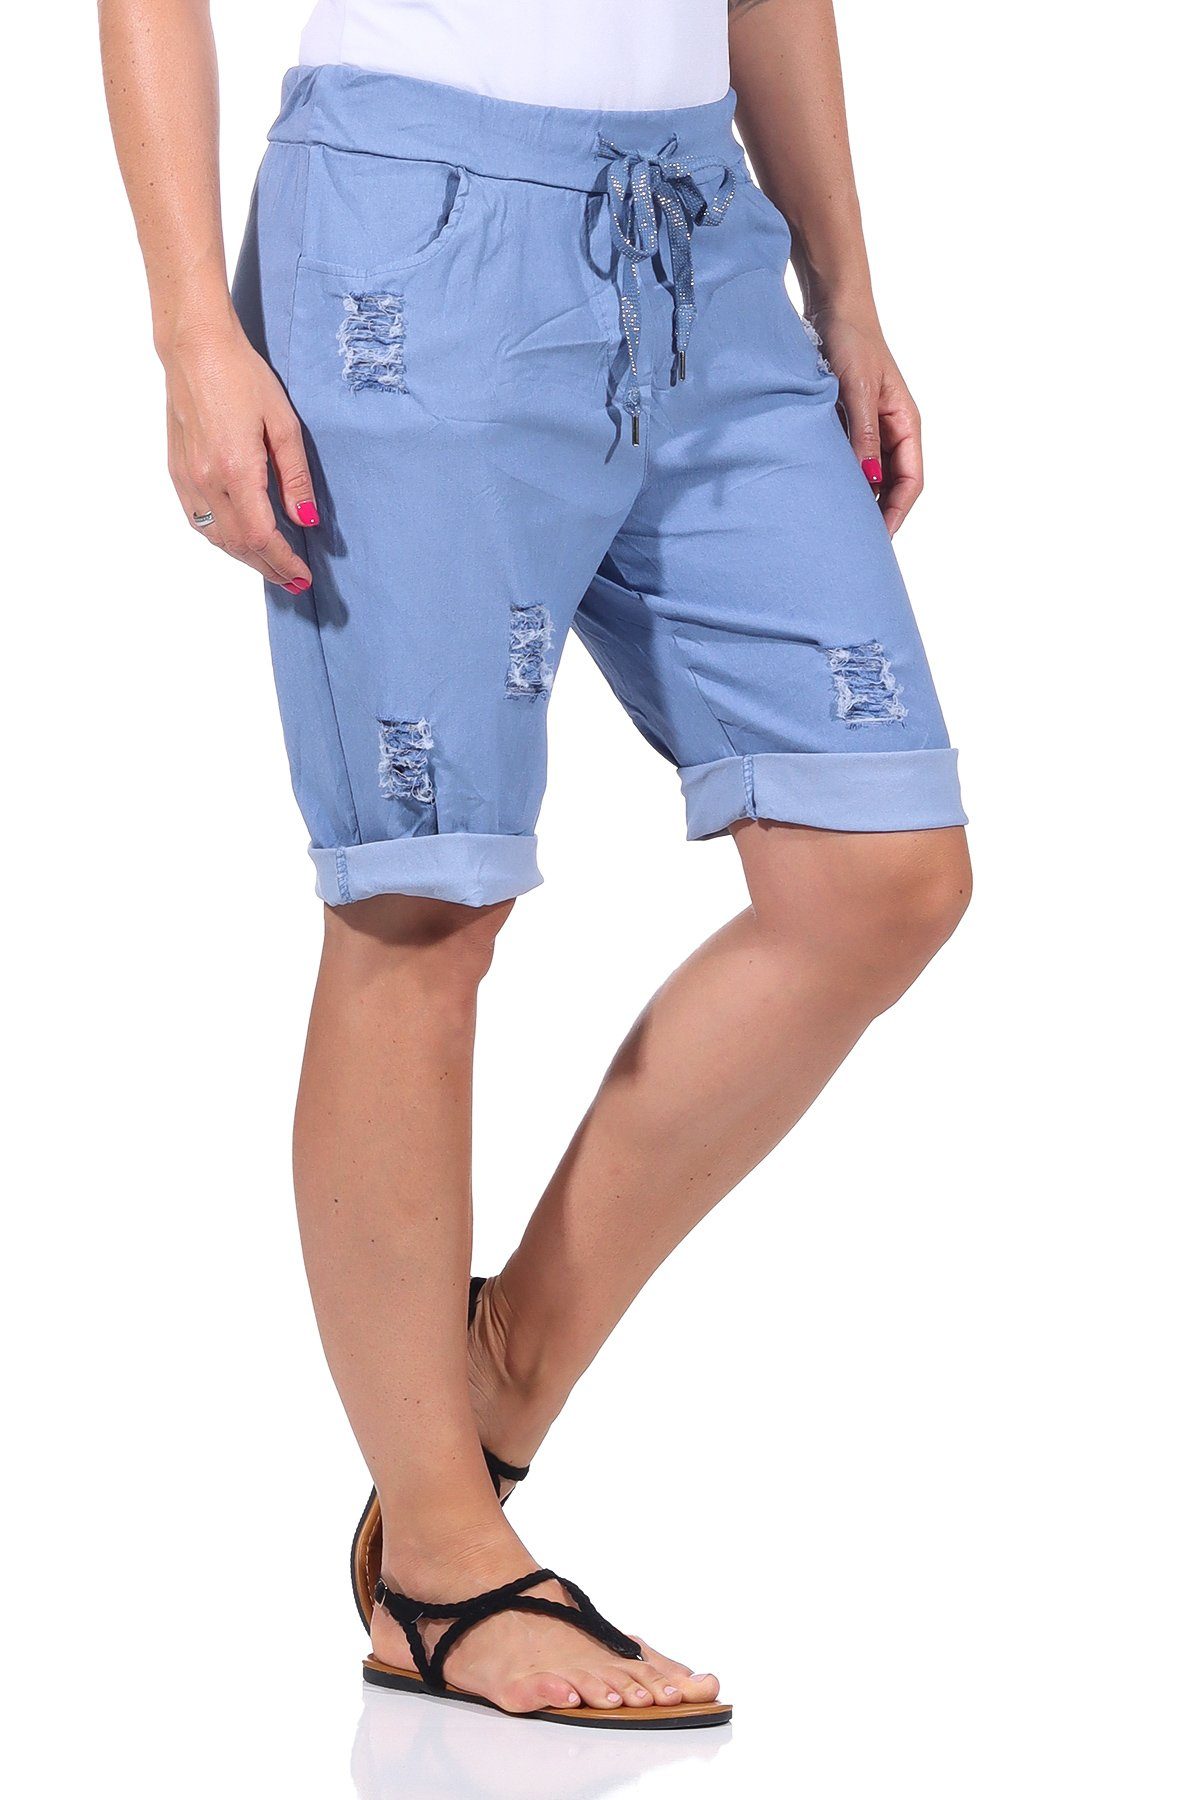 Aurela Damenmode Strandshorts Sommerliche Bermuda für Damen kurze Hose im leichten Distressed Look casual, basic, elastisch, Stretch Jeans